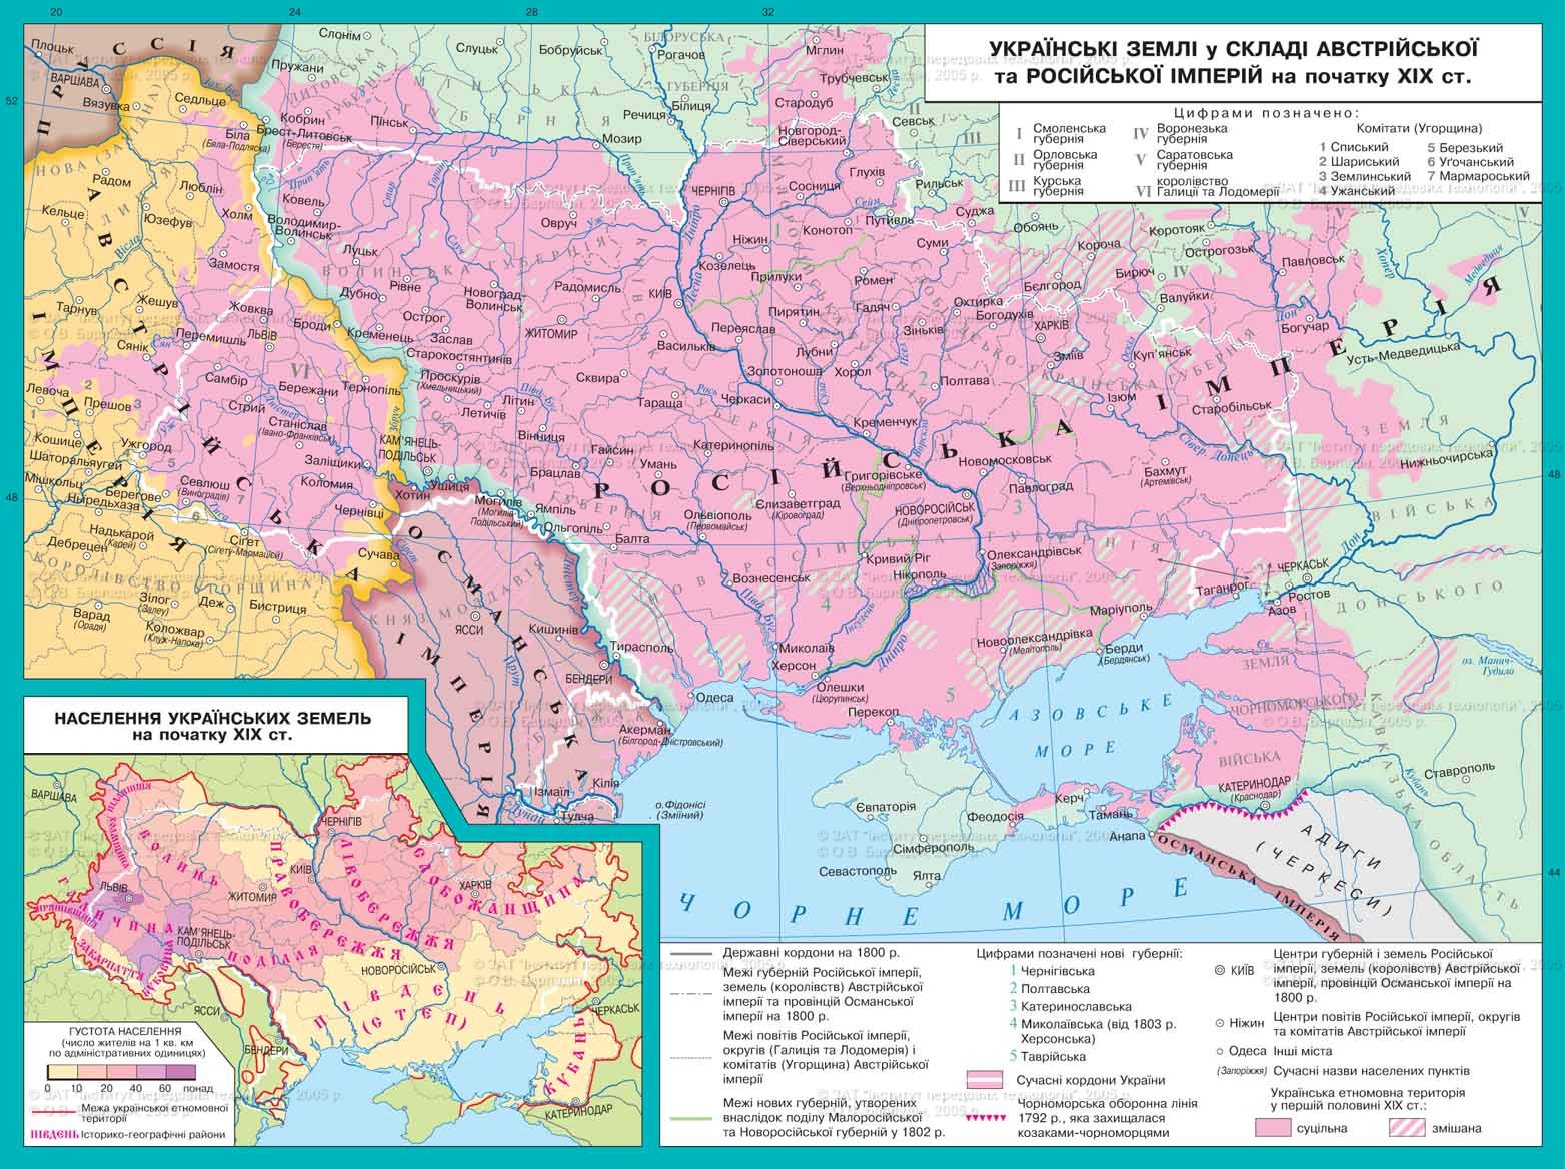 Ukraine in the Russian empire map